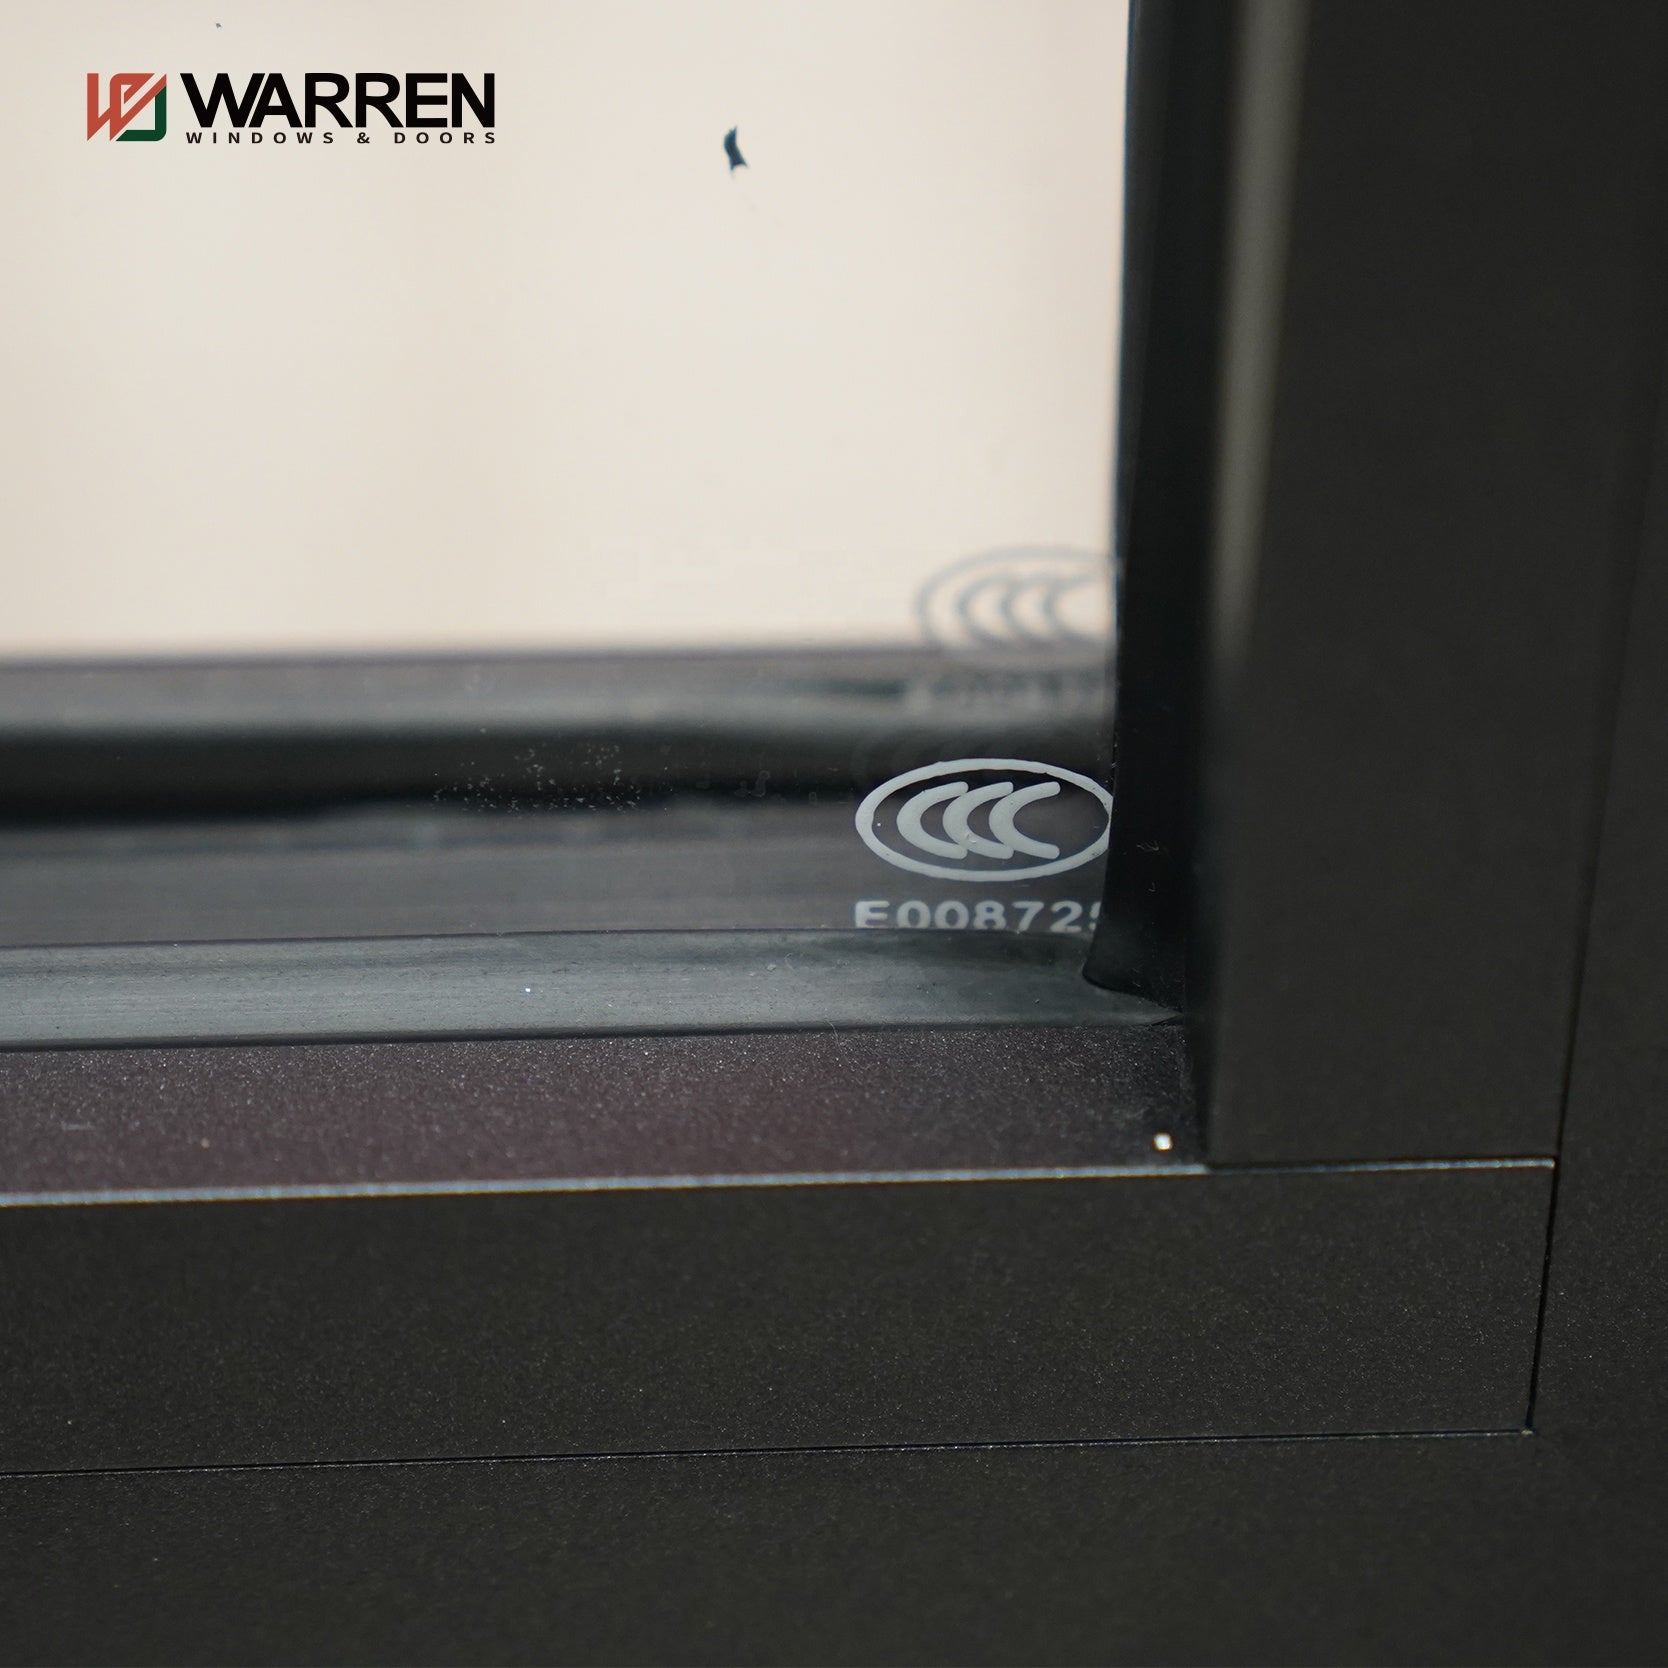 Warren House Exterior Thermal Break Aluminium Profiles Double glazed Window And Door Heavy Duty Patio Sliding Doors